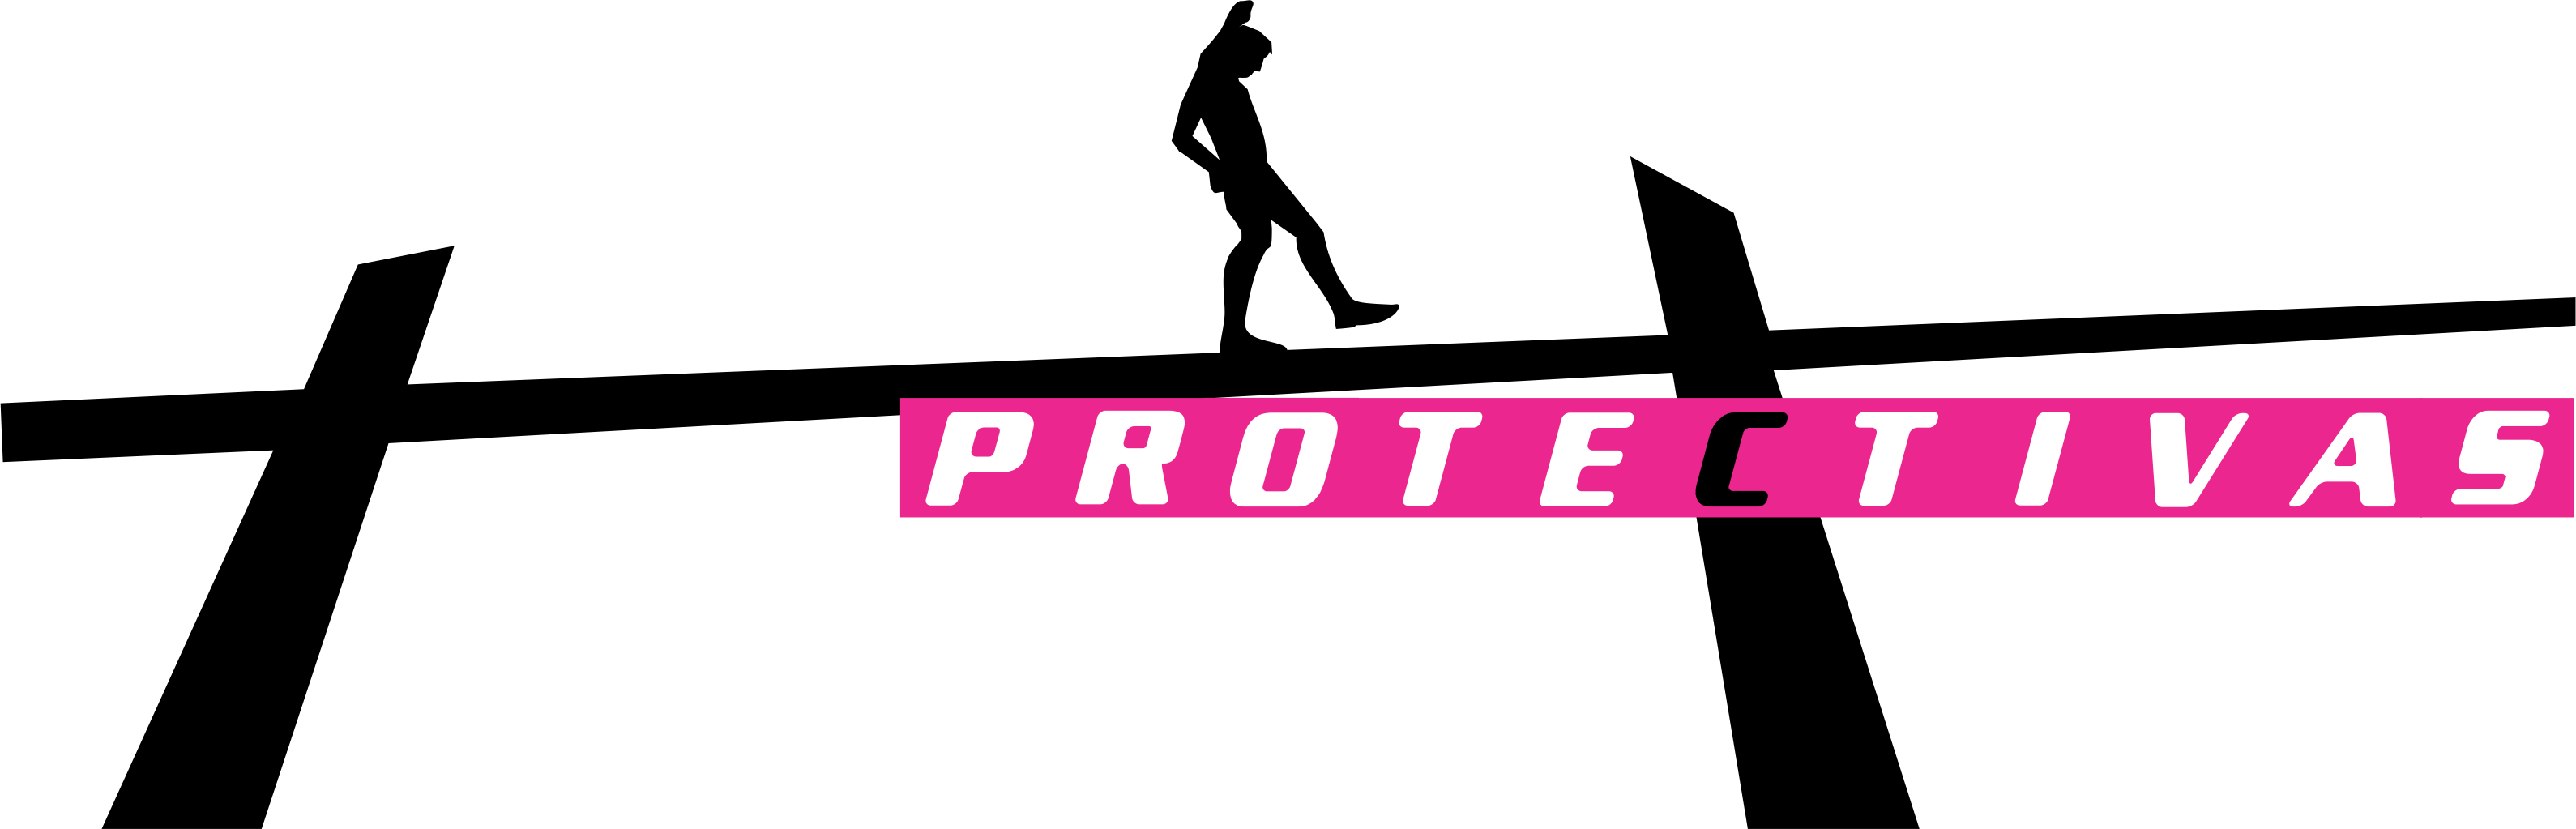 PROTECTIVAS